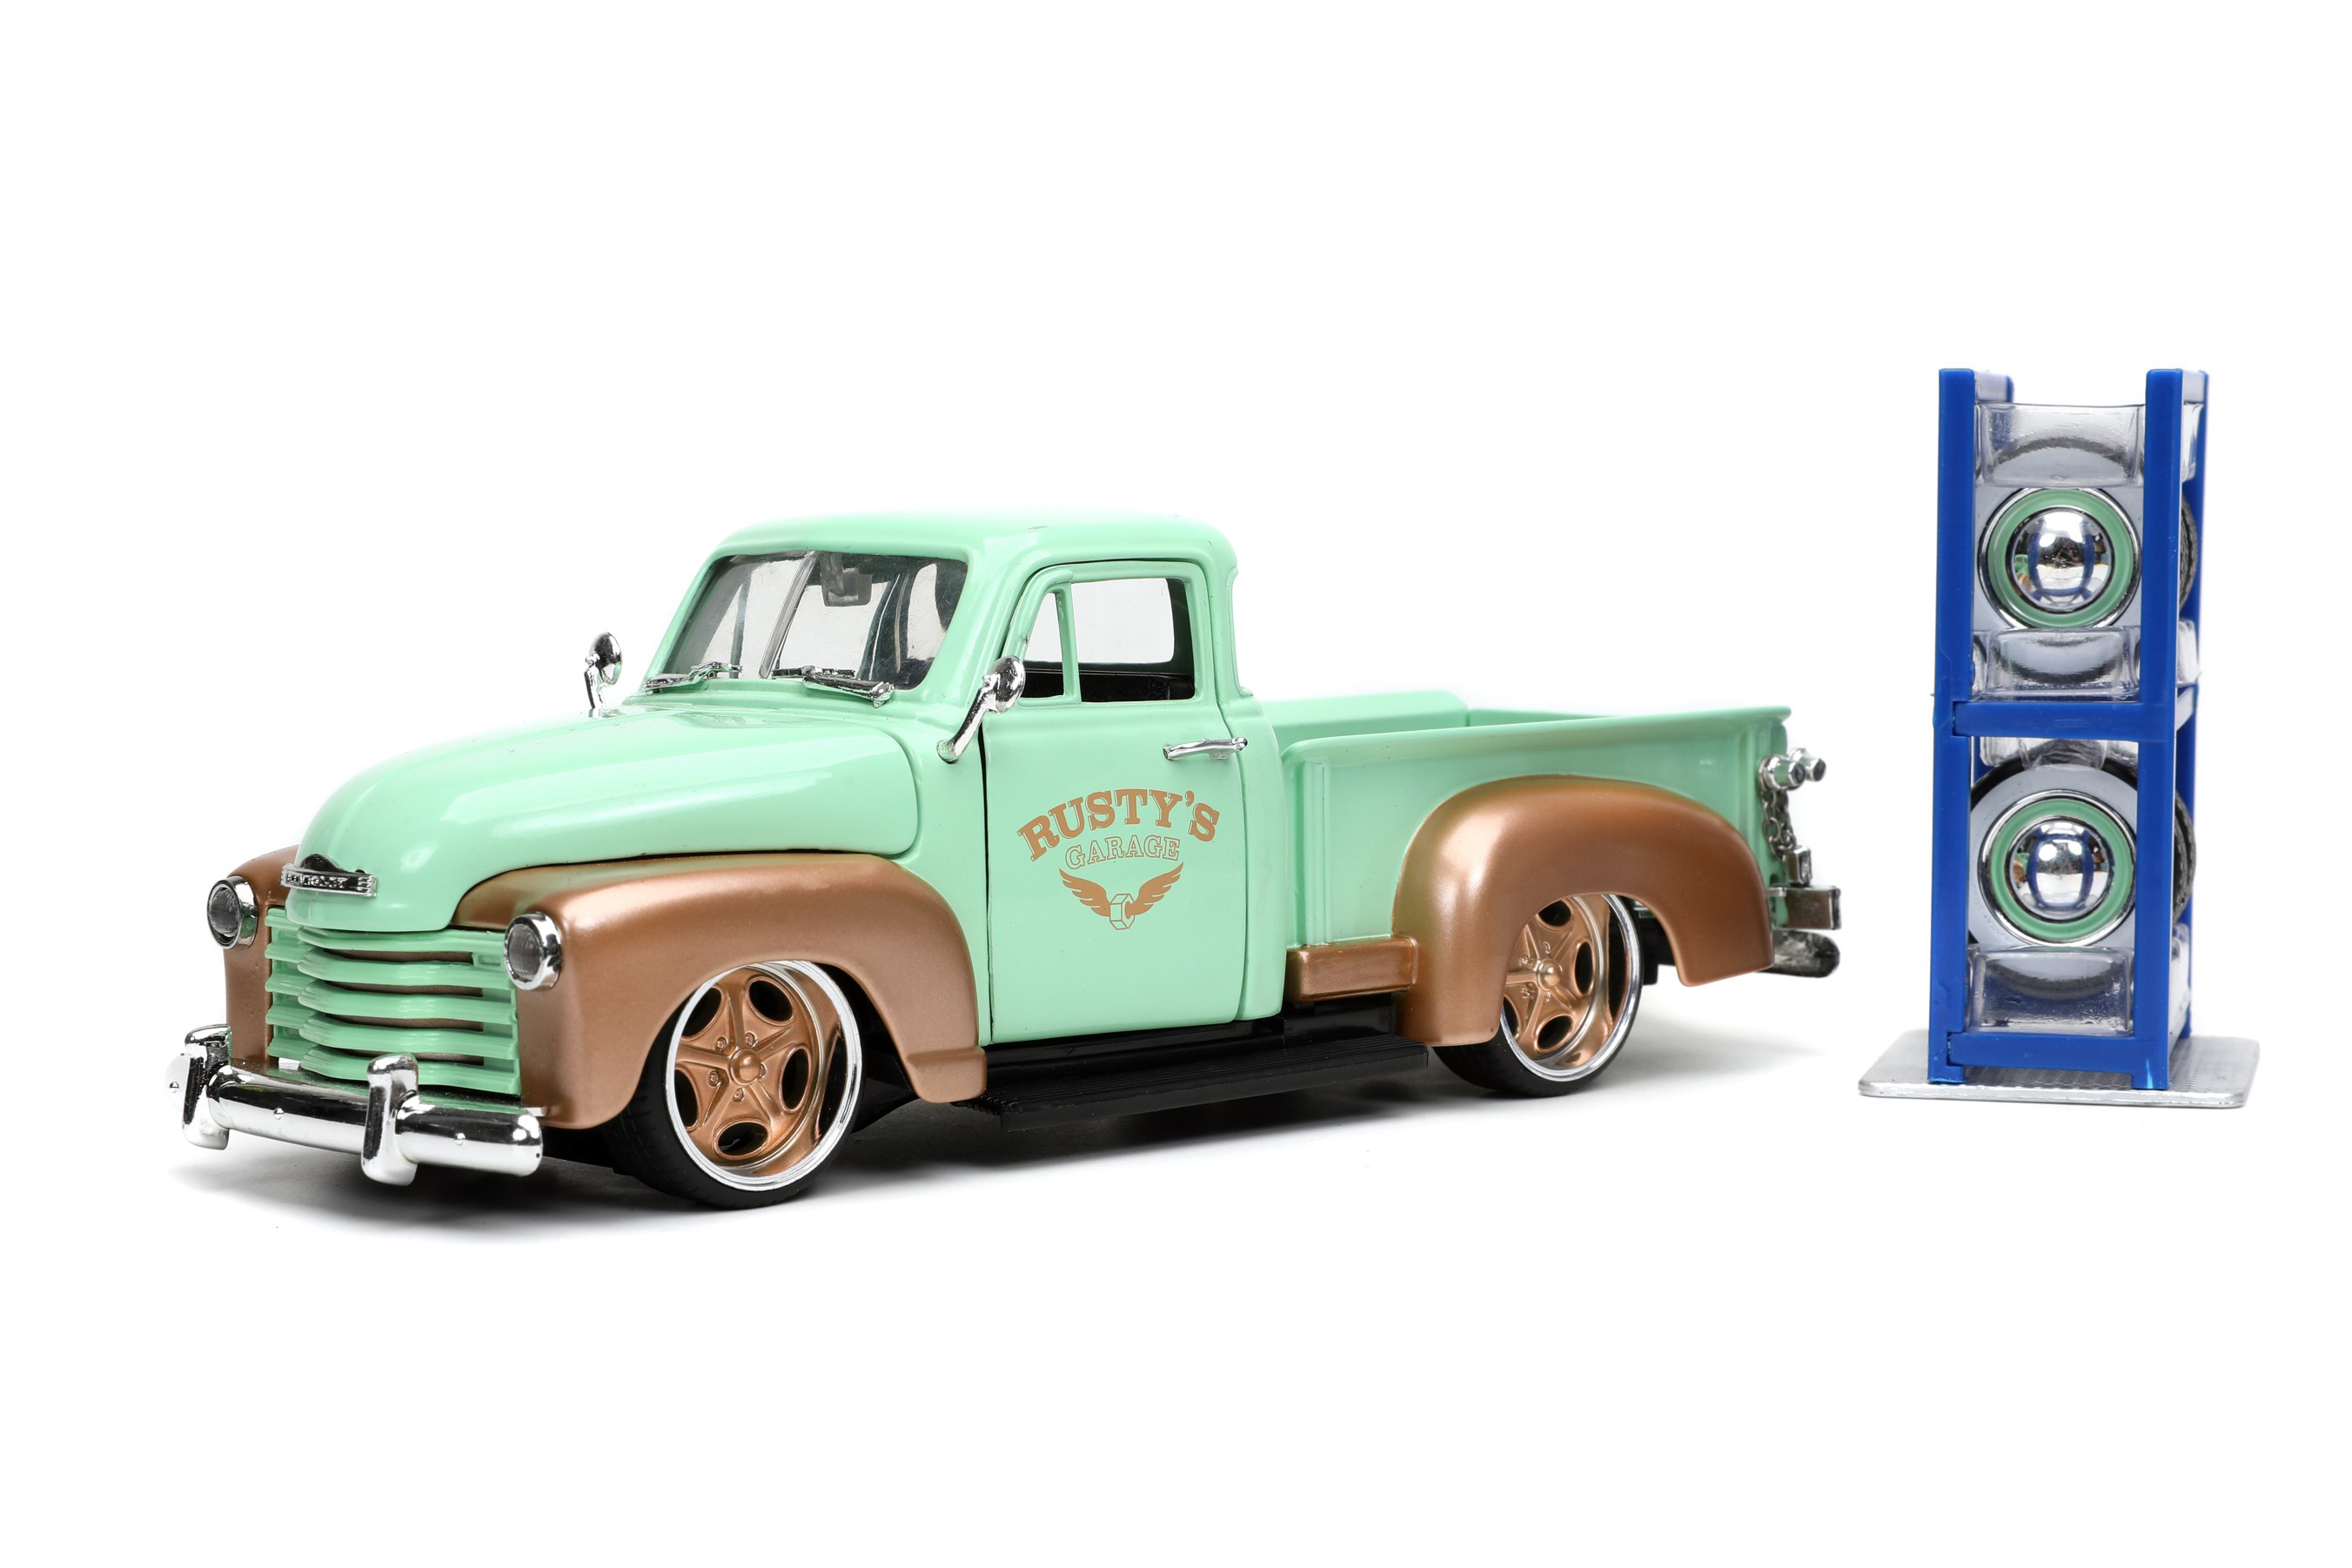 Modell eines Chevy Pick Up aus dem Jahr3 1953. Die von General Motors gebauten Pick Ups hatten an Vorne und hinten ausgestellte Kotflügel. Der mintgrüne Chevy ist mit dem kupferfarbenen LOGO RUSTY`S Garage, kupferfarbenen Kotflügeln und zwei Sätzen von Felgen mit Reifen hergestellt. Die "gepimpten" Niederquerschnittsreifen mit kupferfarbenen Felgen können gegen die klassischen Felgen mit Weißwandreifen und Chromradkappen ausgetauscht werden. Ein Reifenregal in blau liegt der Packung bei. Schraubendreher ist für die Montage ebenfalls im Lieferumfang enthalten. 